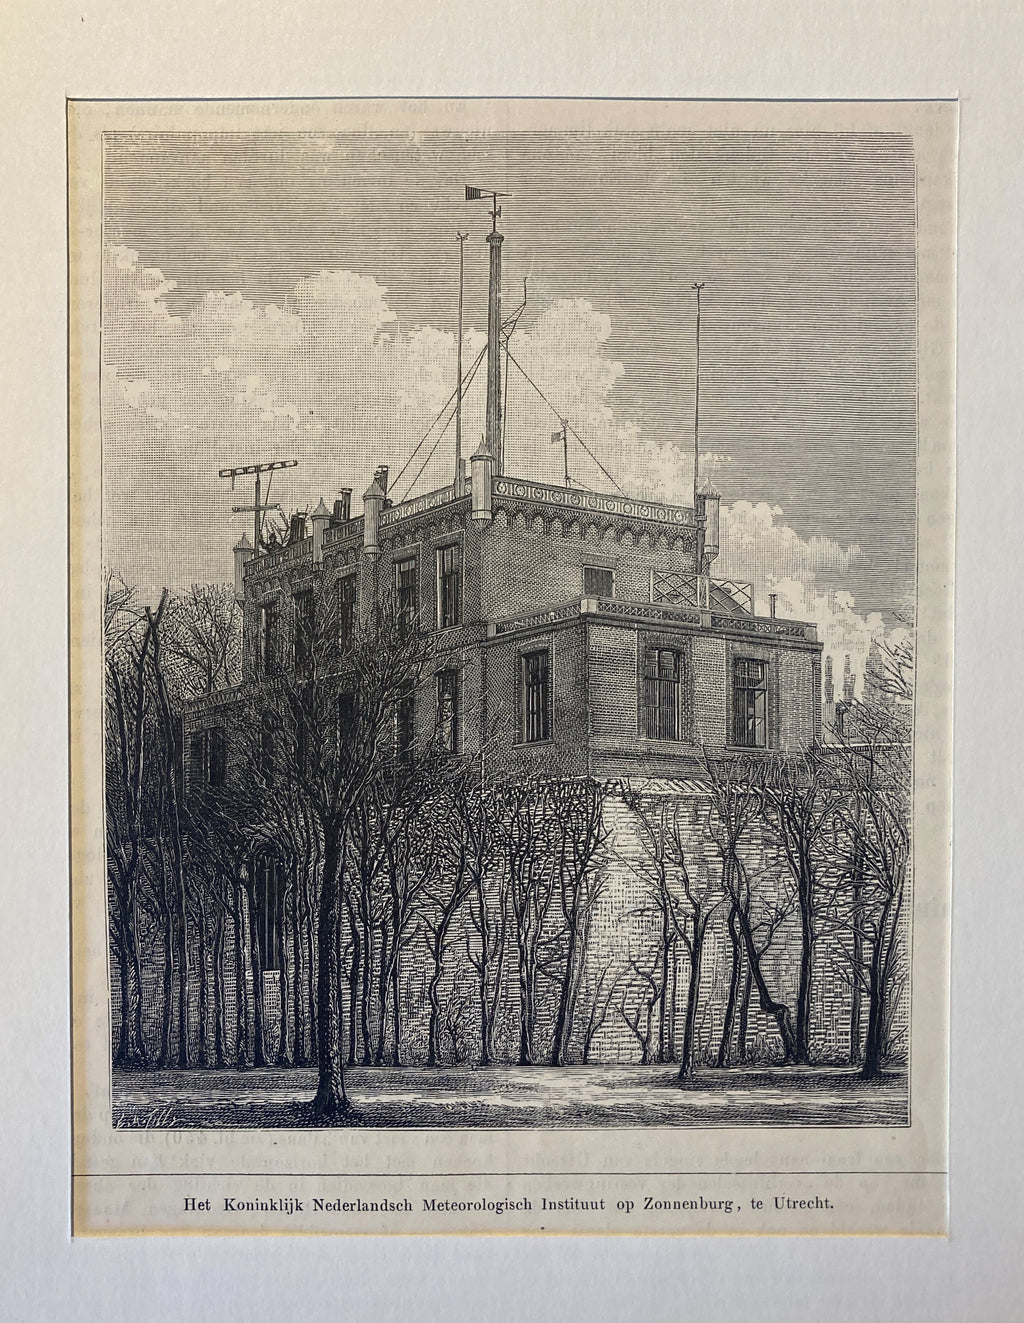 Zonnenburg, het Koninklijk Nederlansch Meteorologisch Instituut te Utrecht- circa 1880